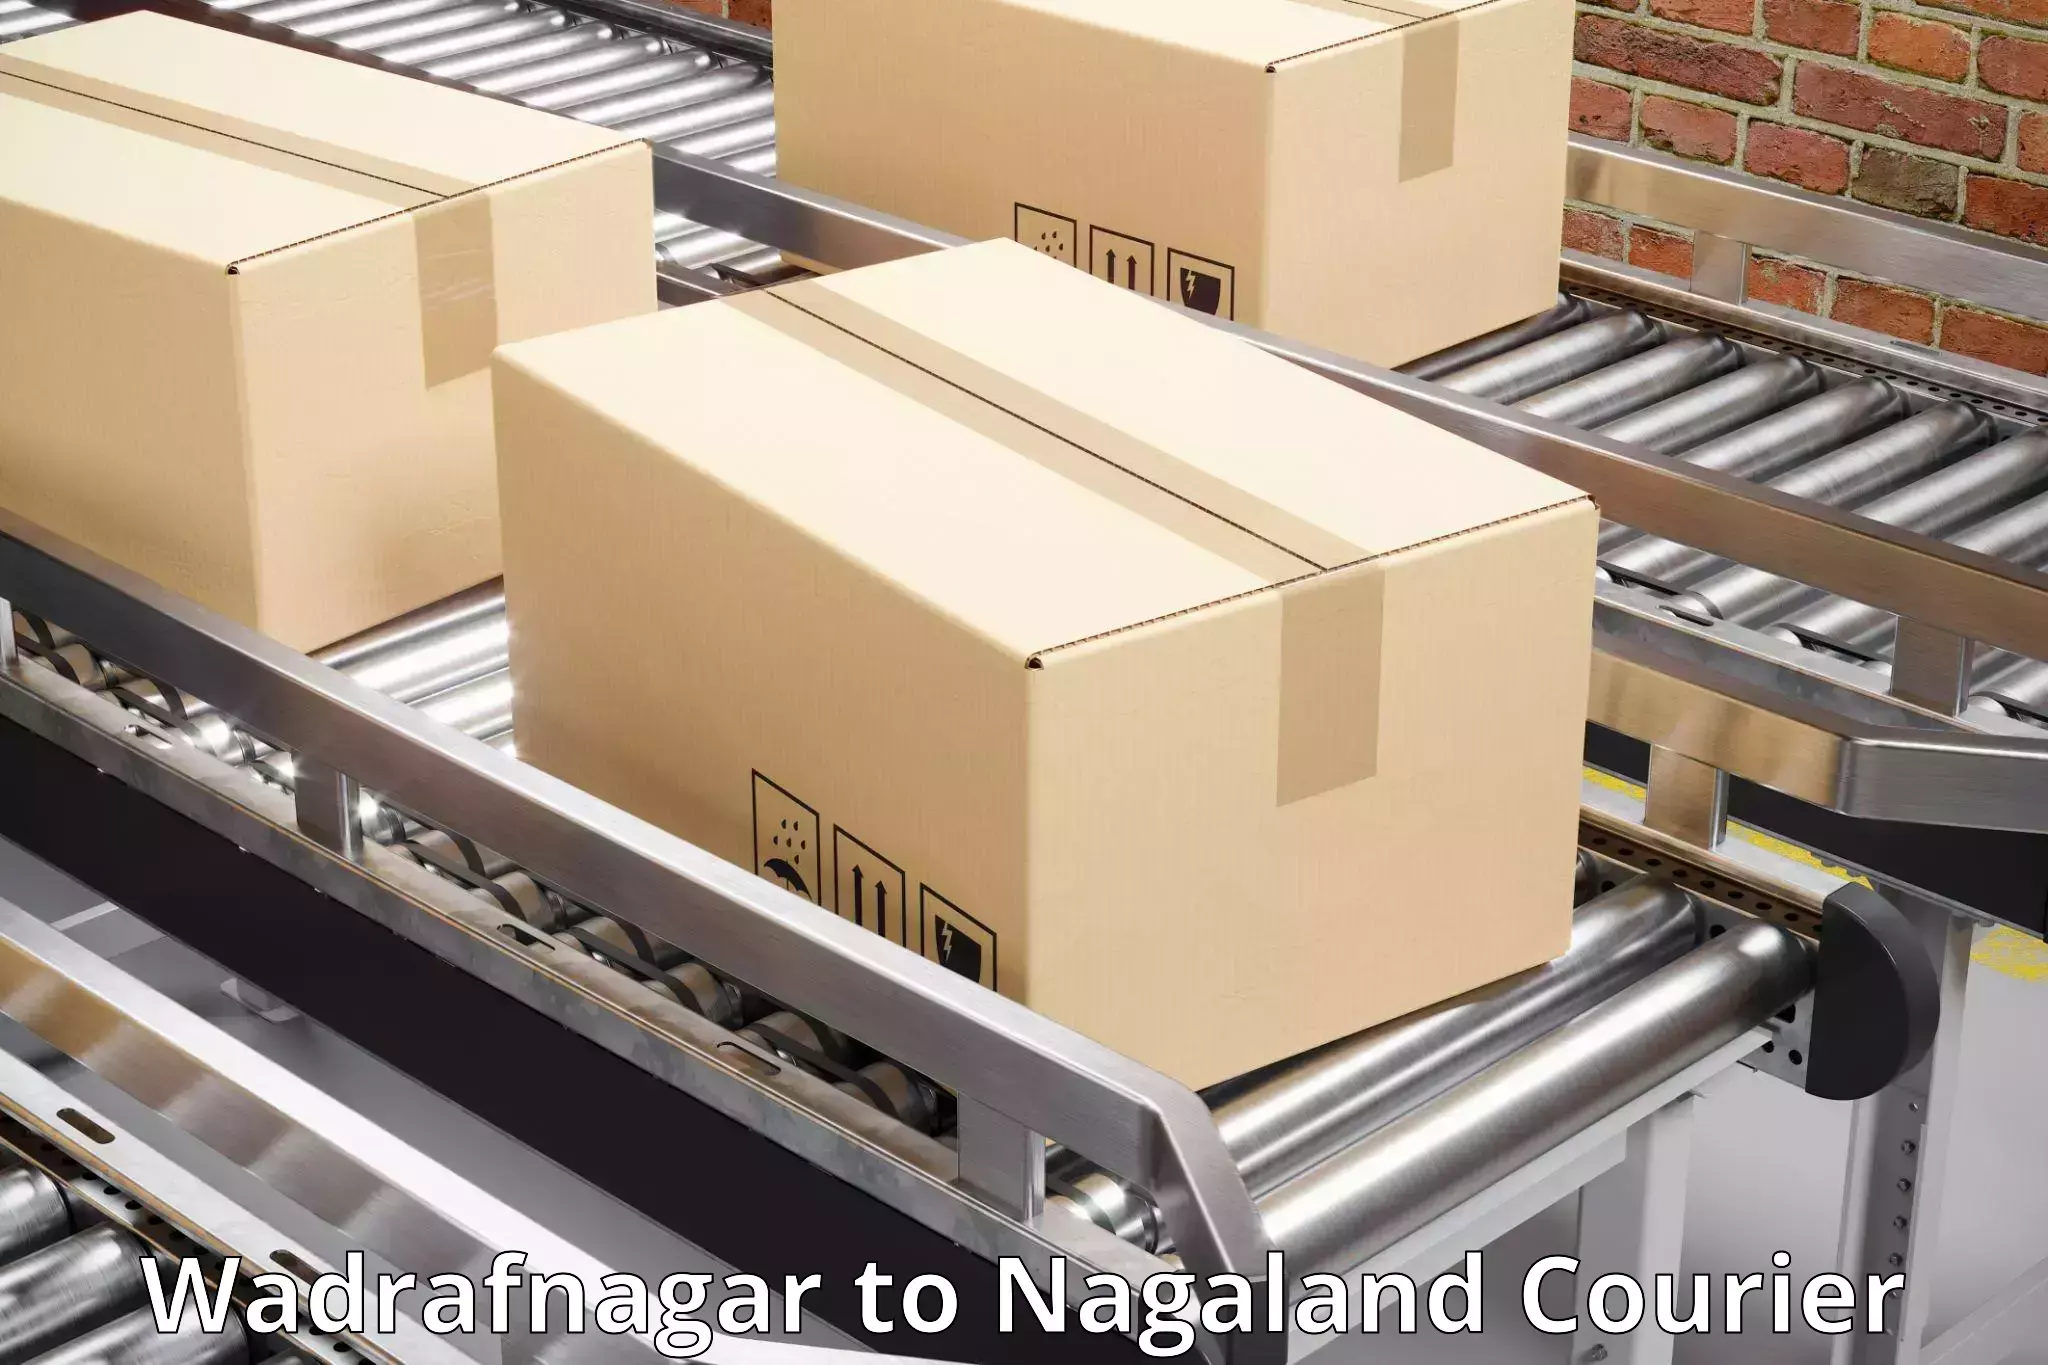 Reliable logistics providers Wadrafnagar to Peren